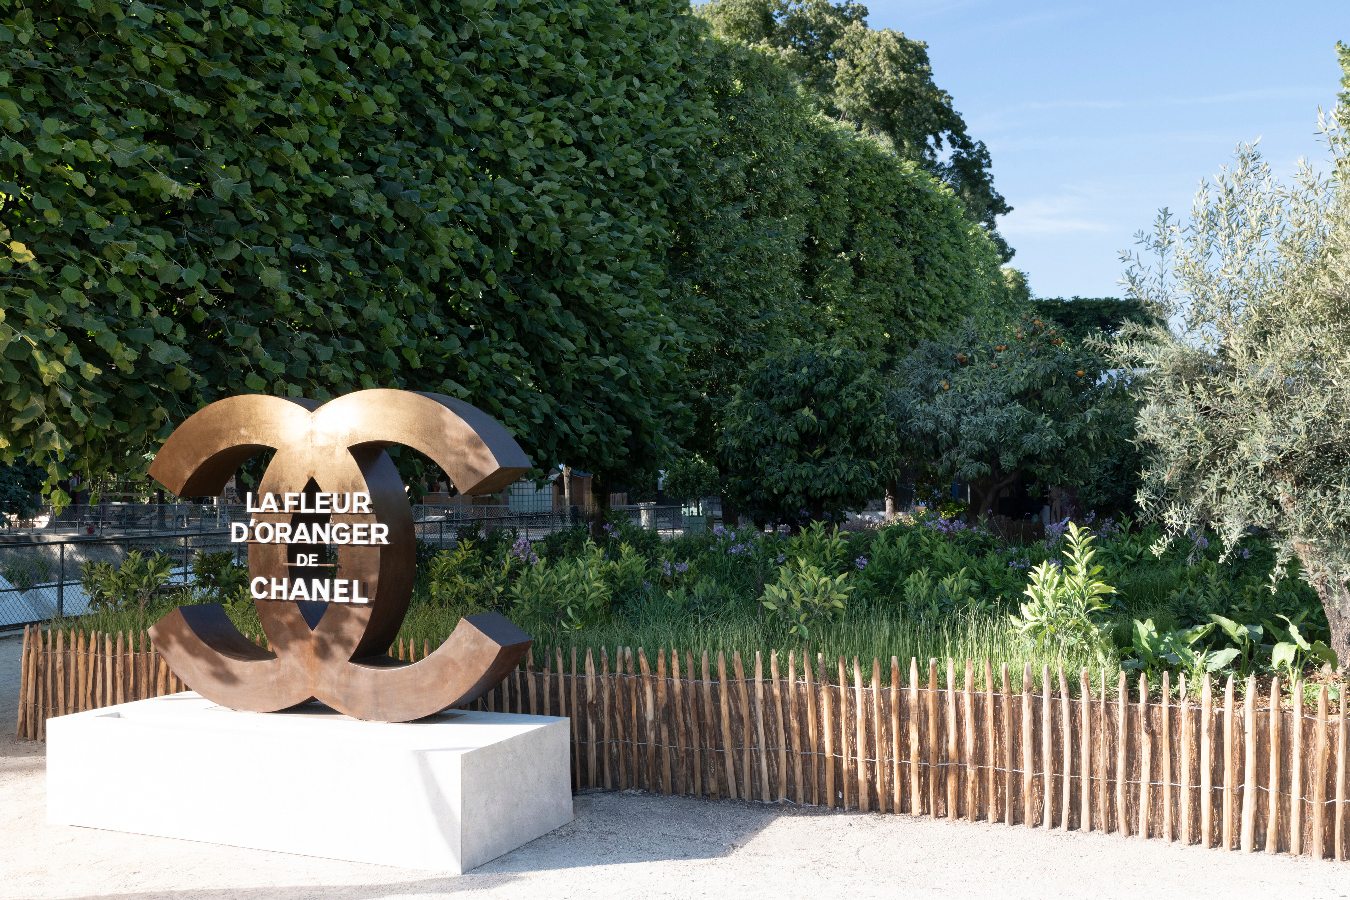 Exposition La Fleur d'Oranger de Chanel